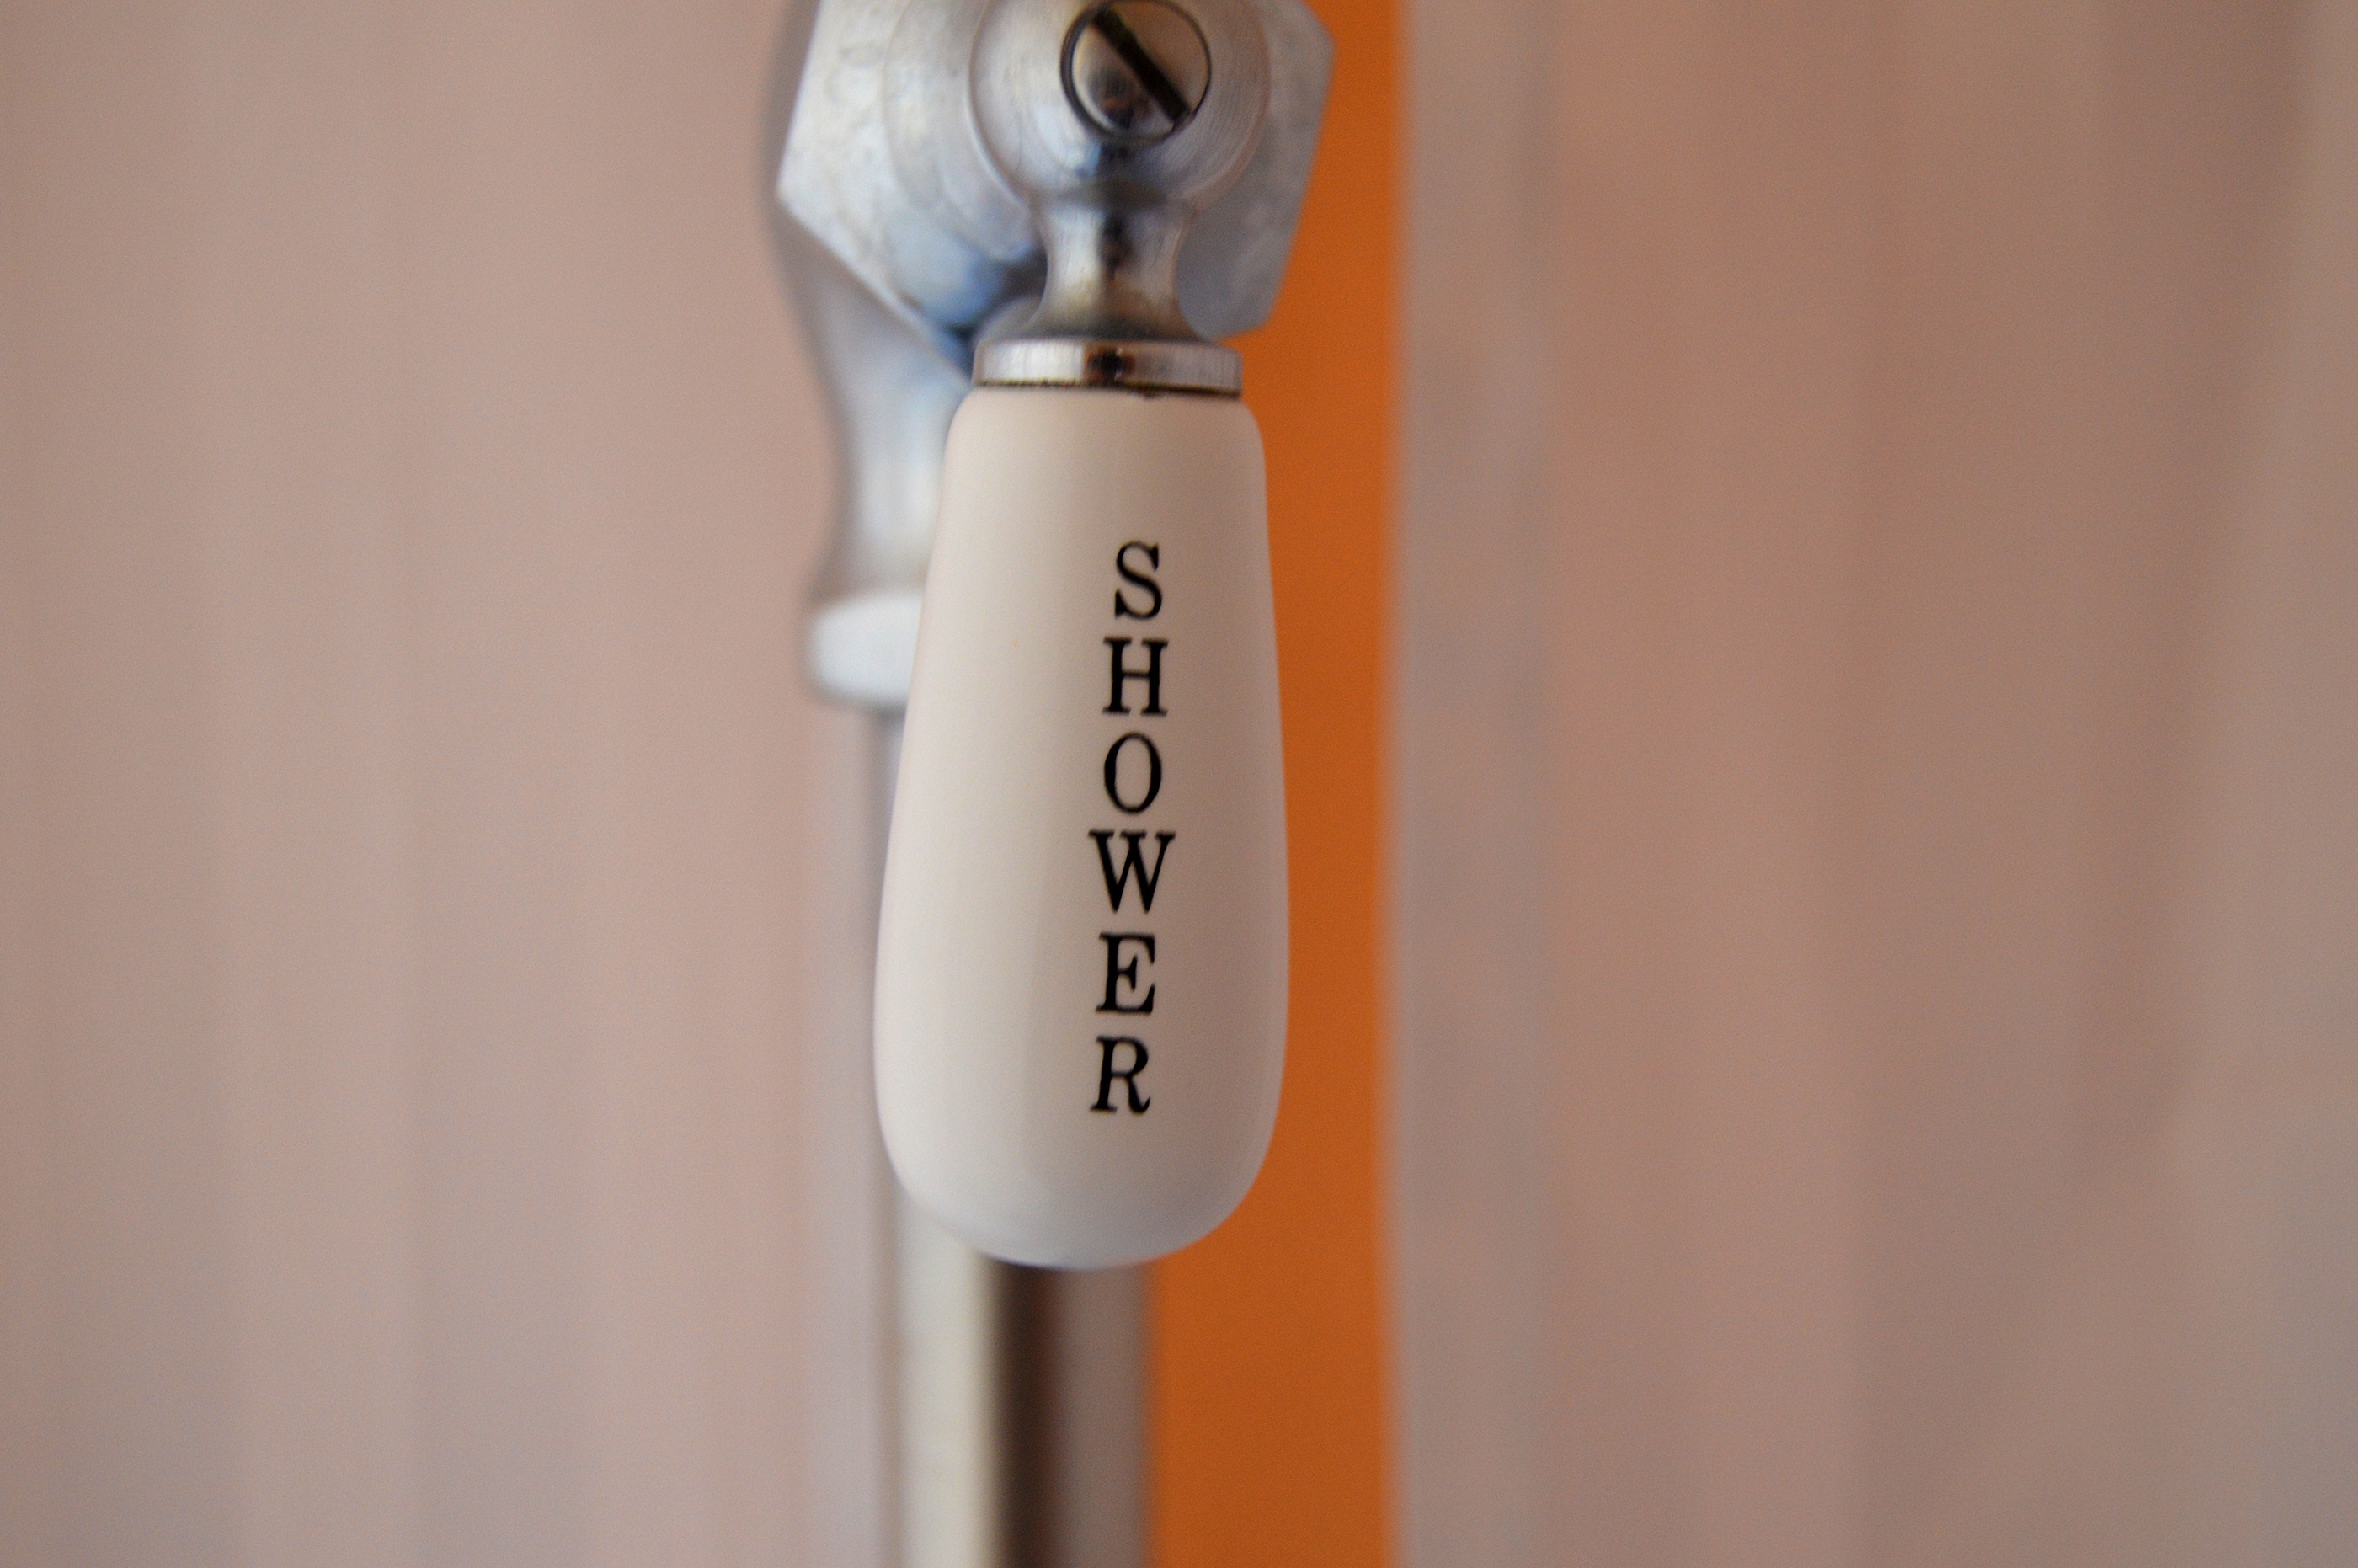 Shower faucet handle